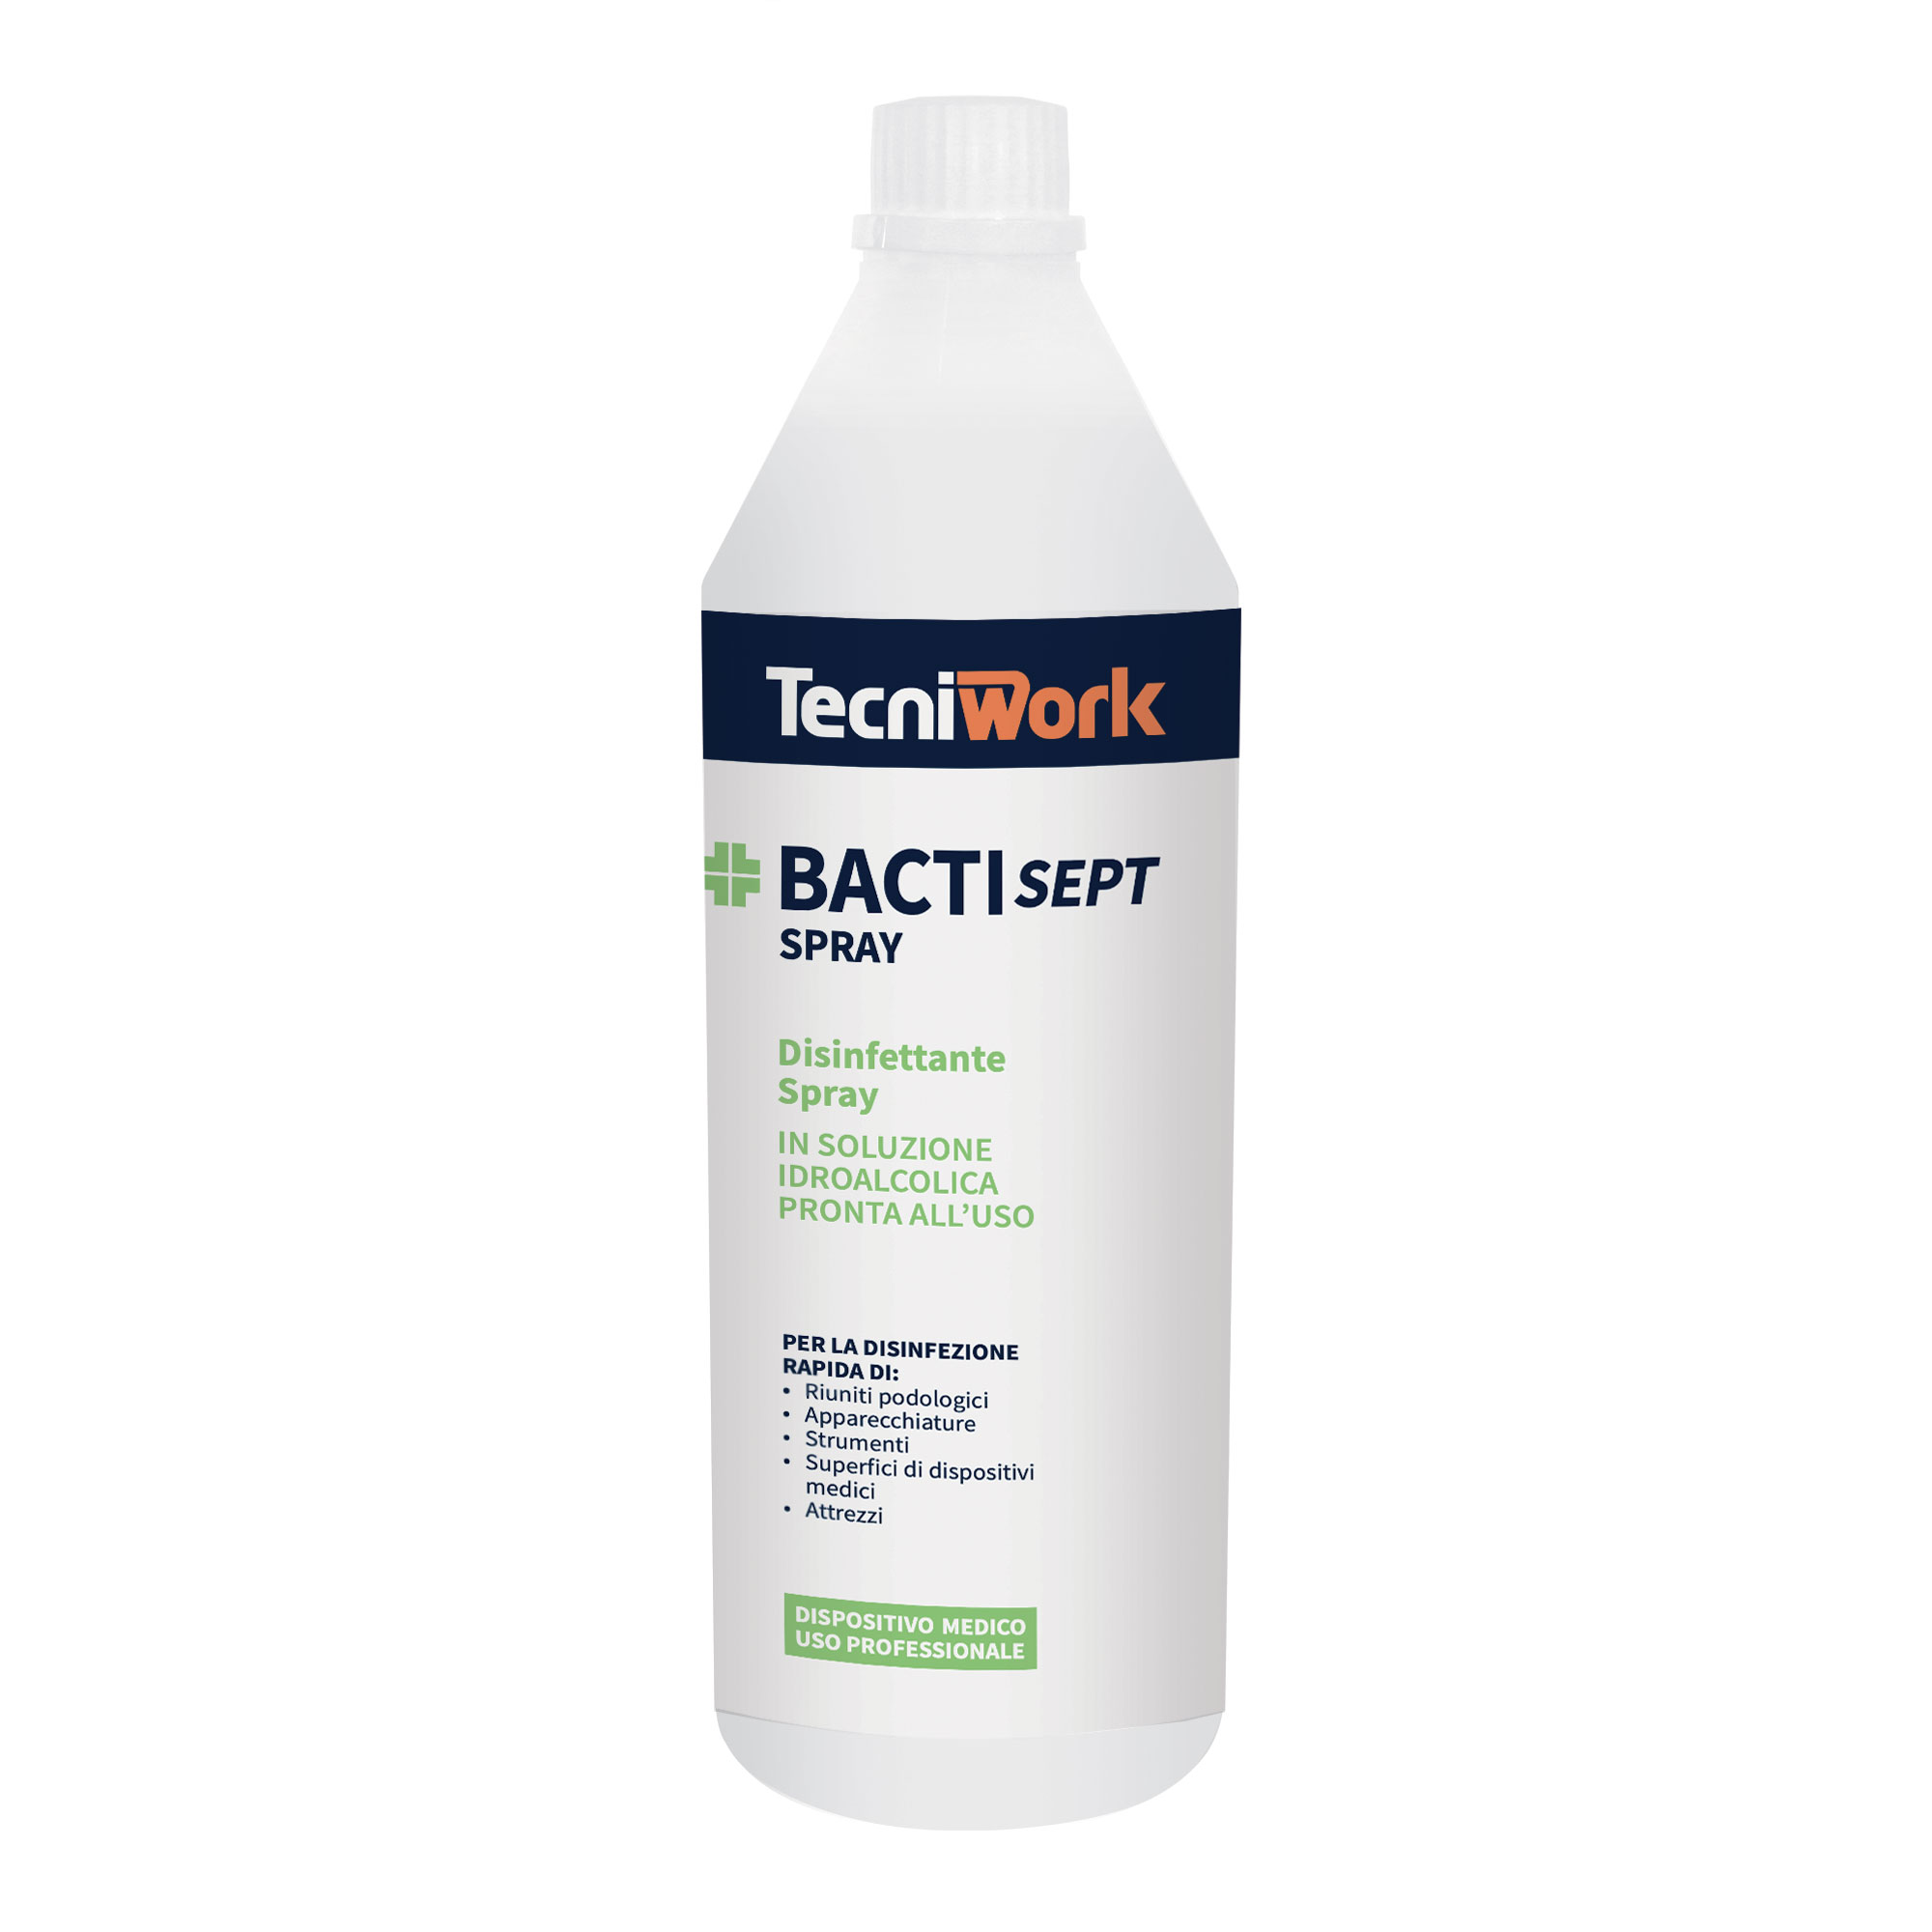 Disinfettante per superfici e attrezzature con grado alcolico 70° Bactisept Spray 1 l